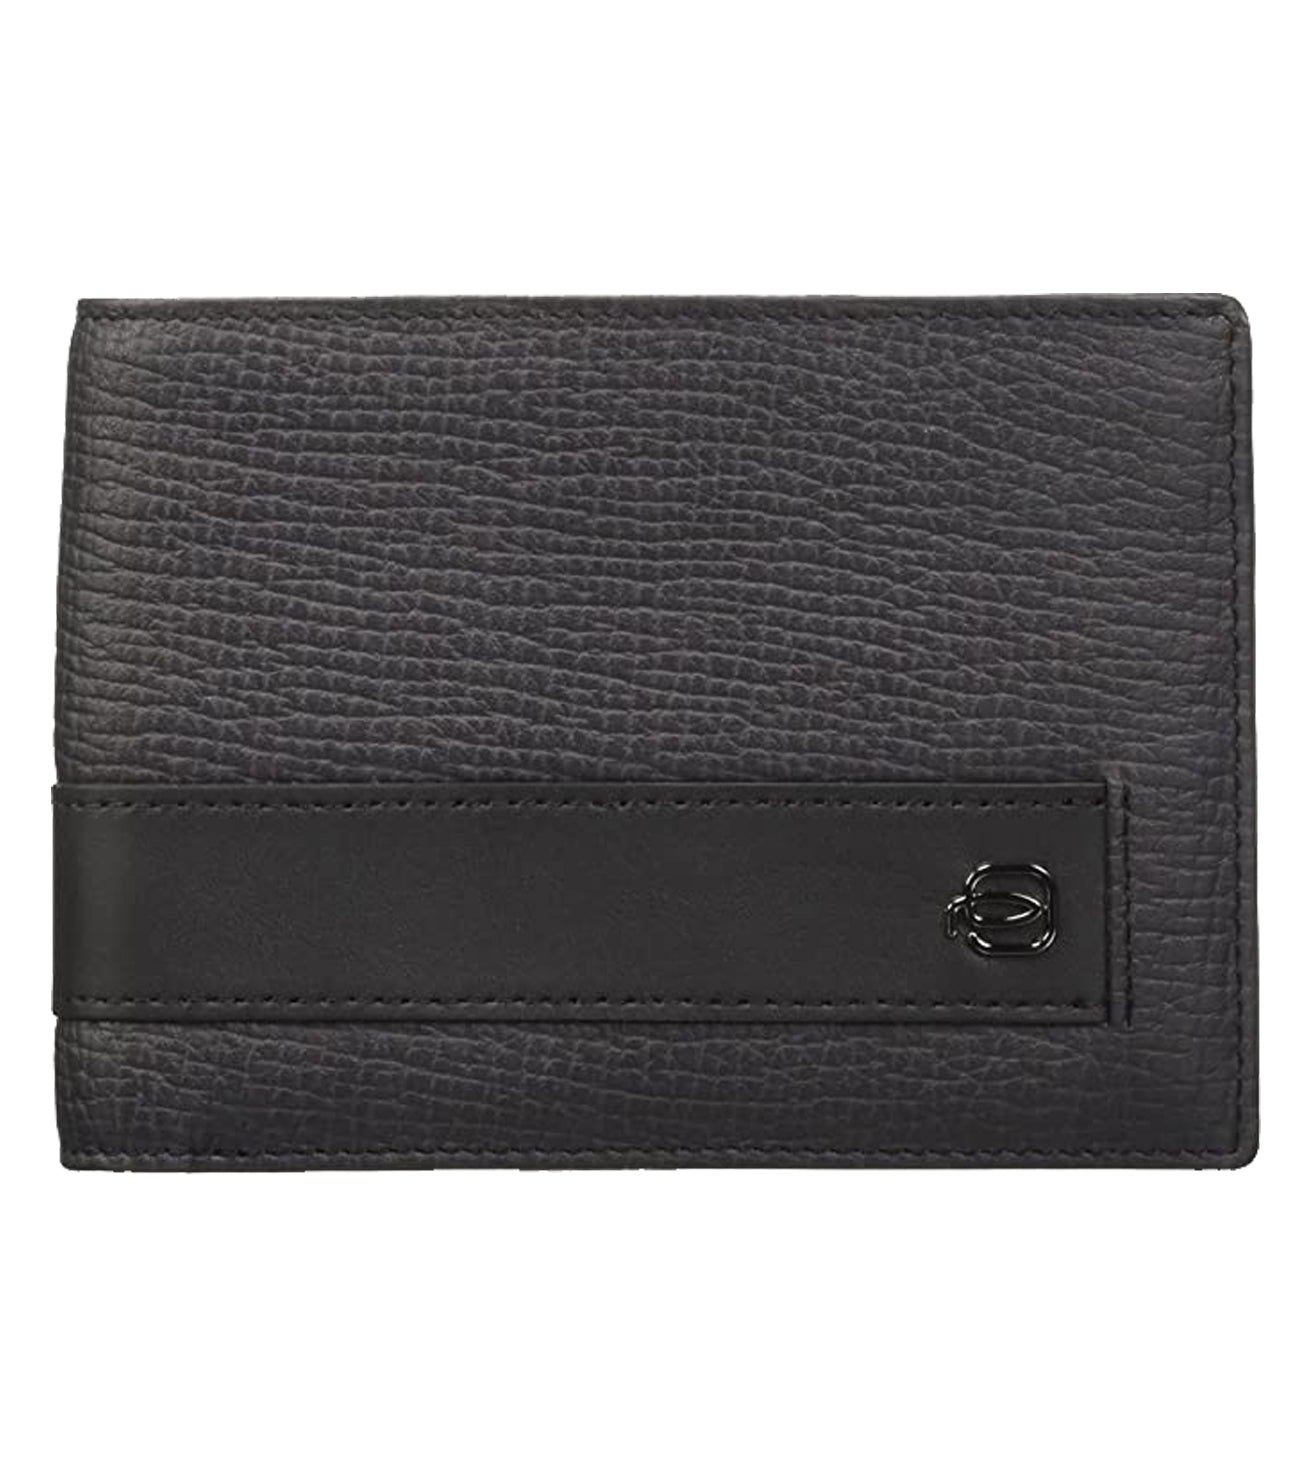 Blue Square Men's Leather Wallet